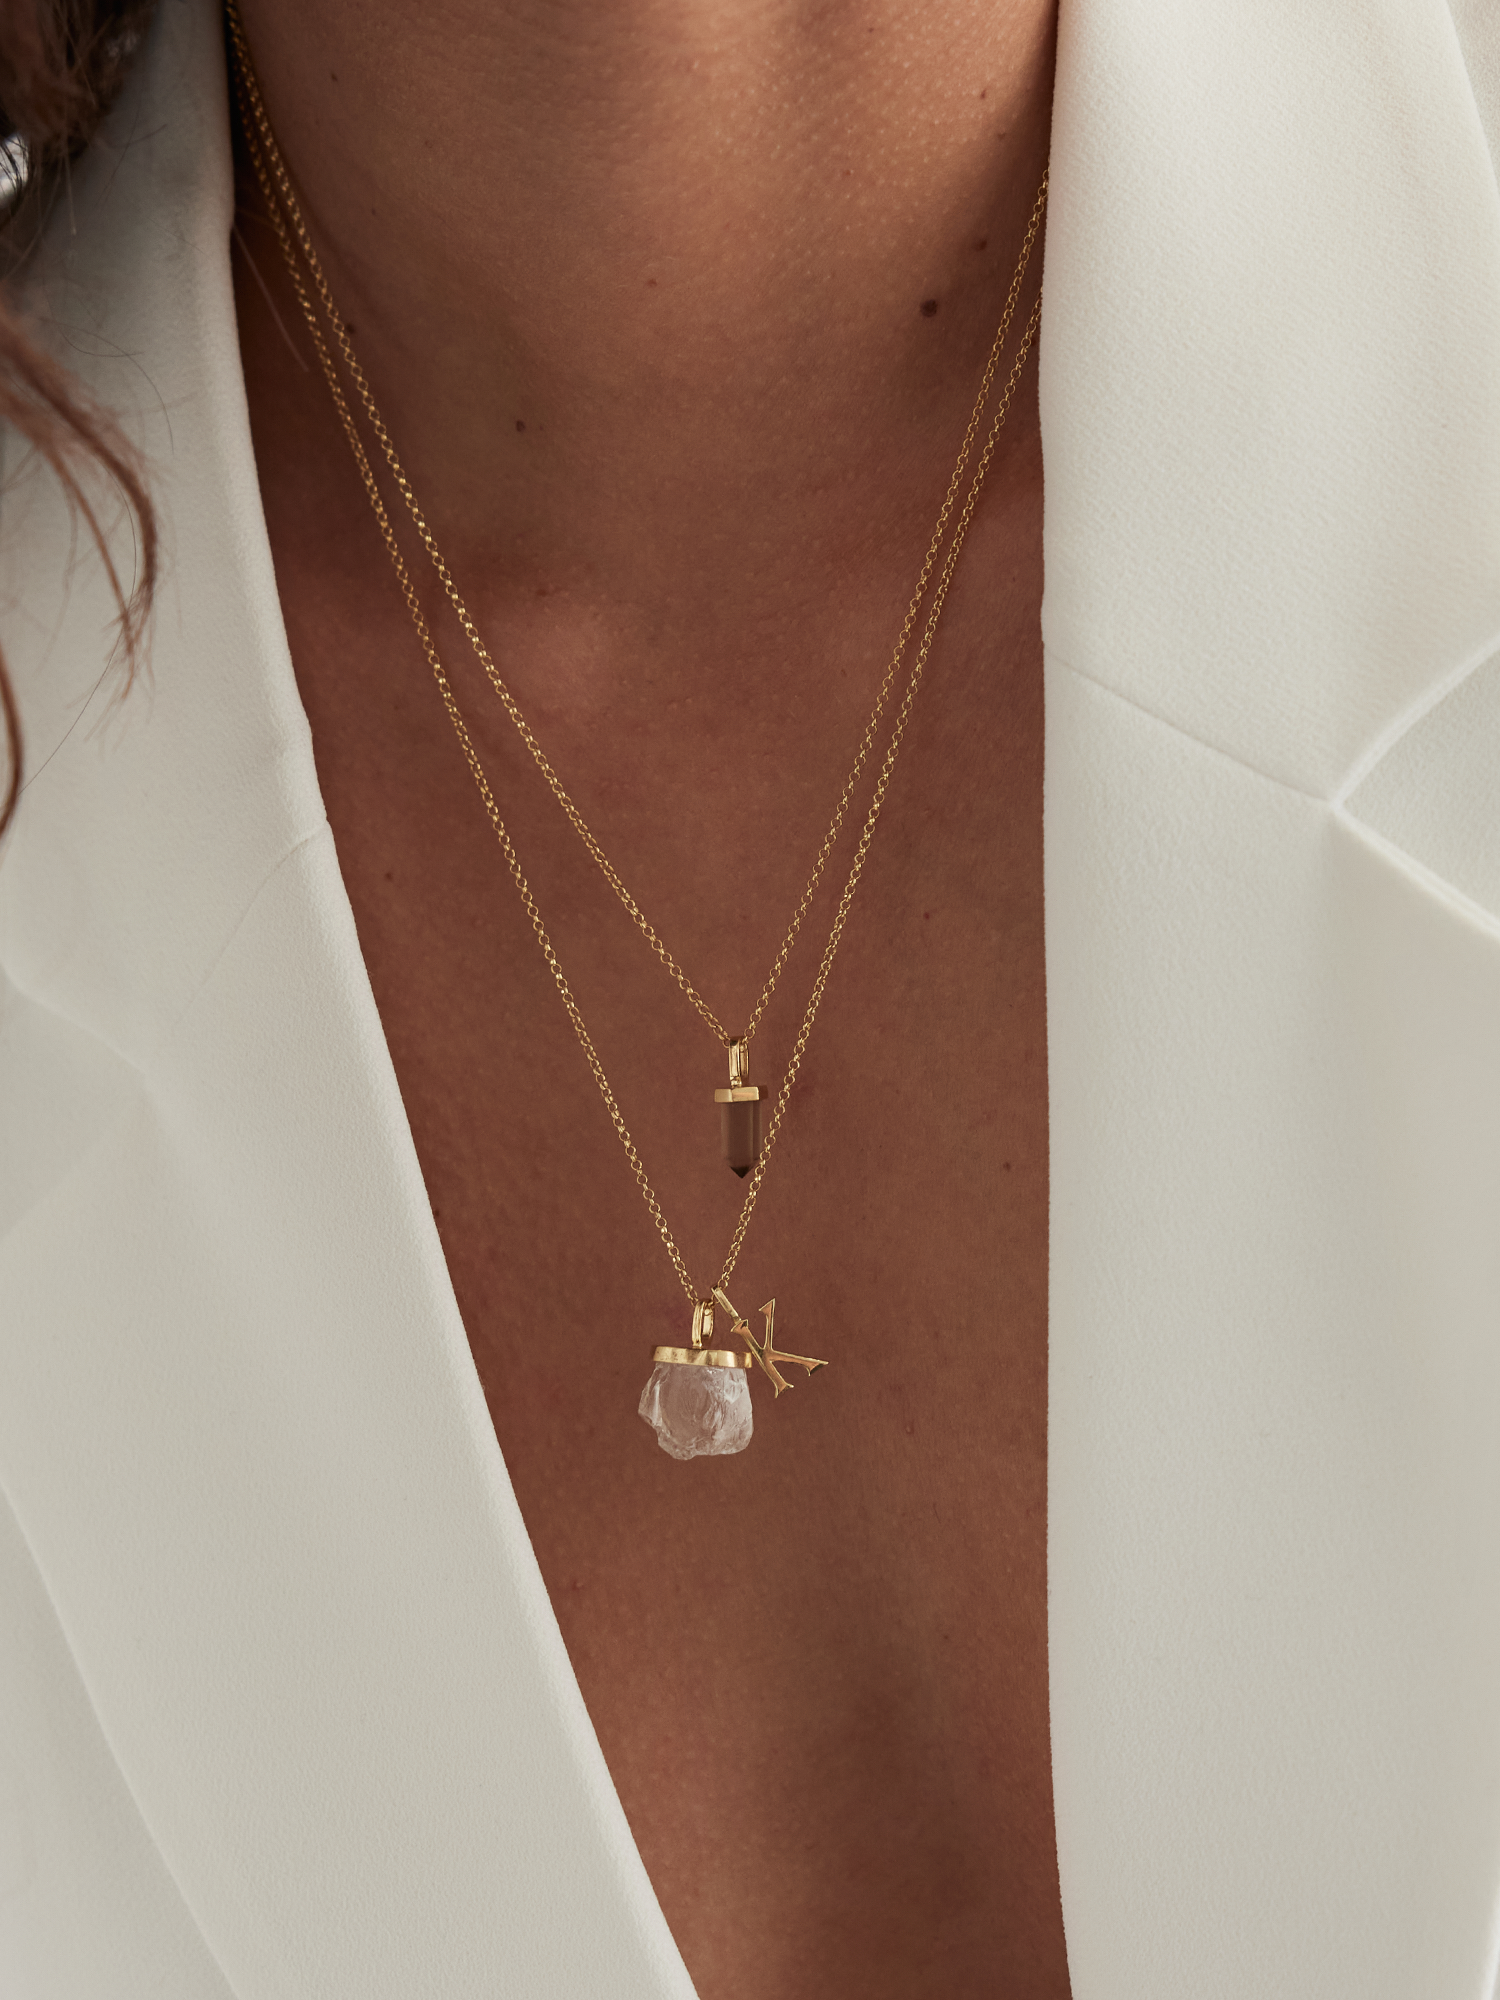 raw crystal necklace charm | clear quartz